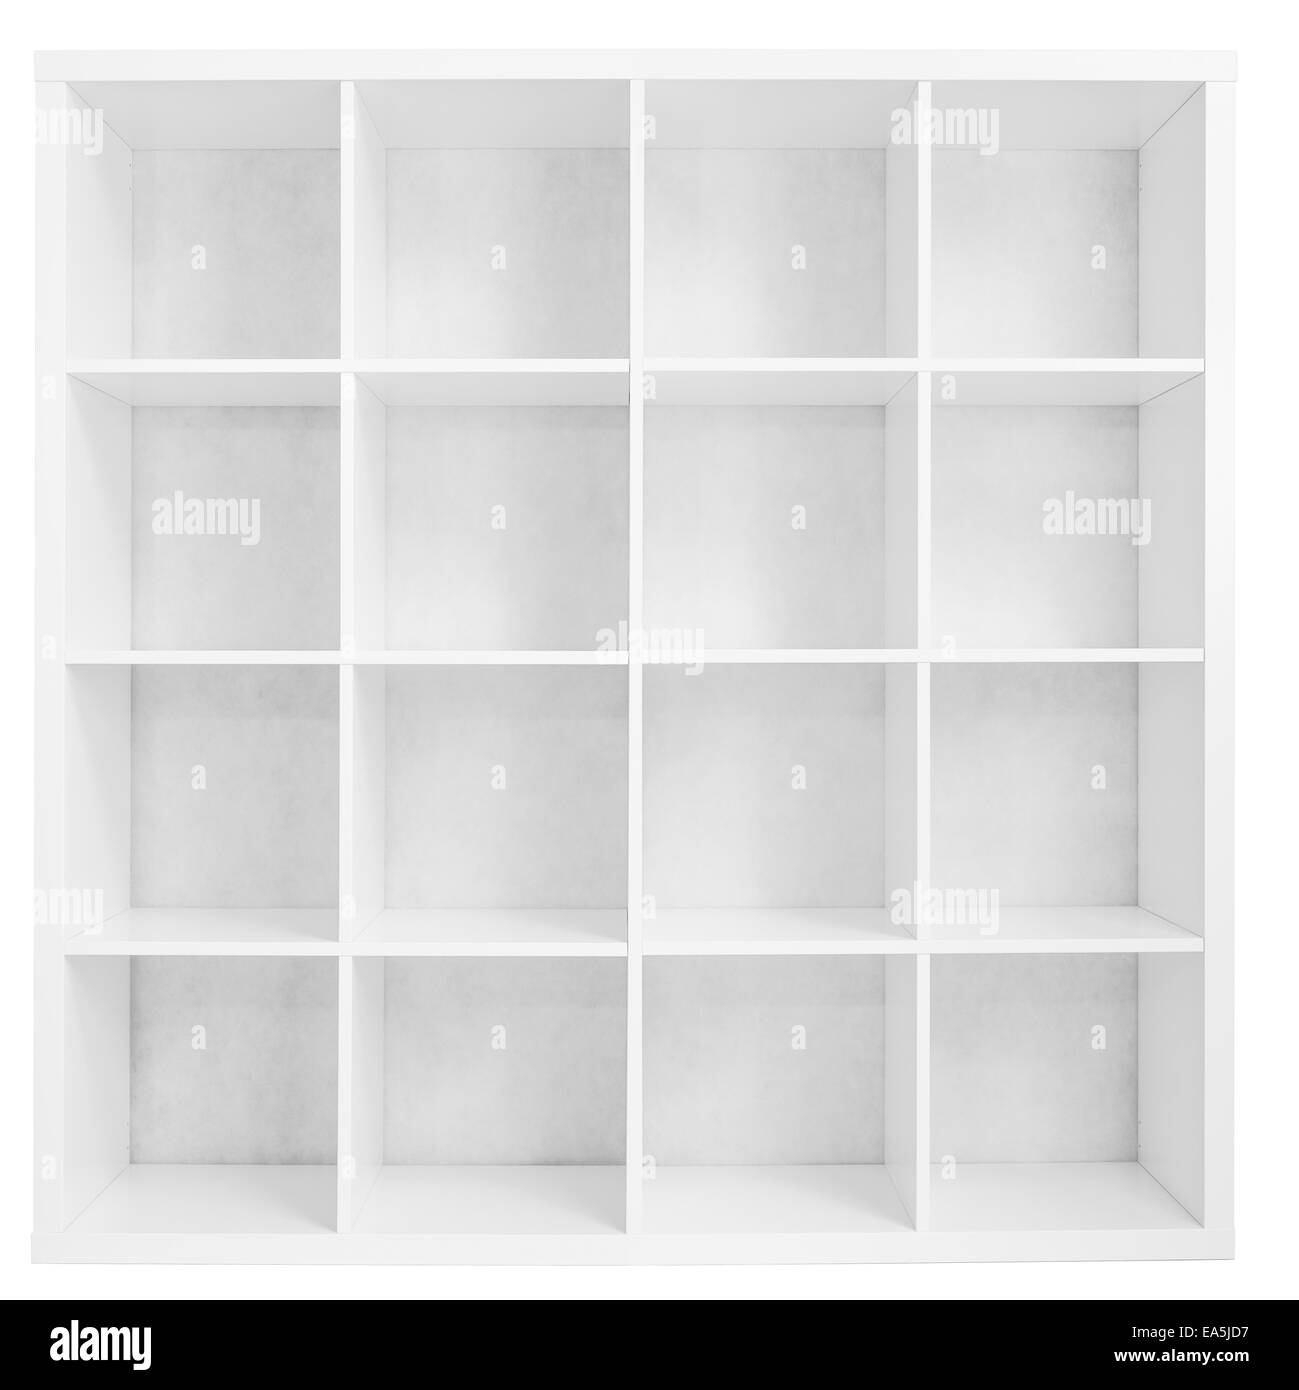 Rack de estantería vacía o almacenar aislado en blanco Foto de stock